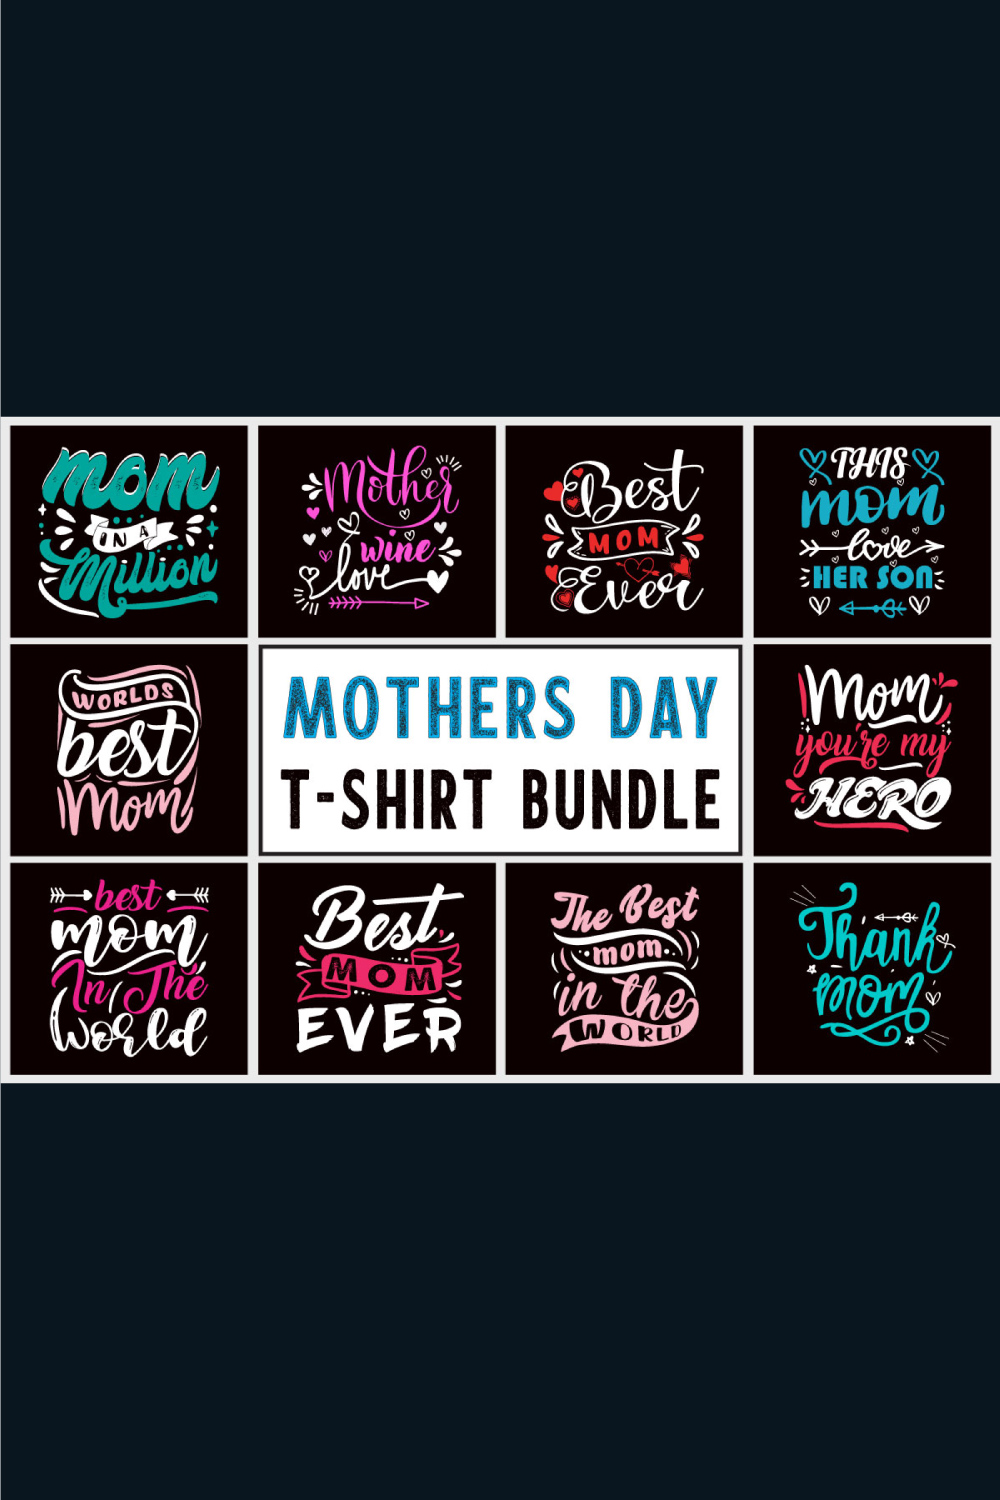 Mother's Day T-Shirt Design SVG Bundle pinterest image.